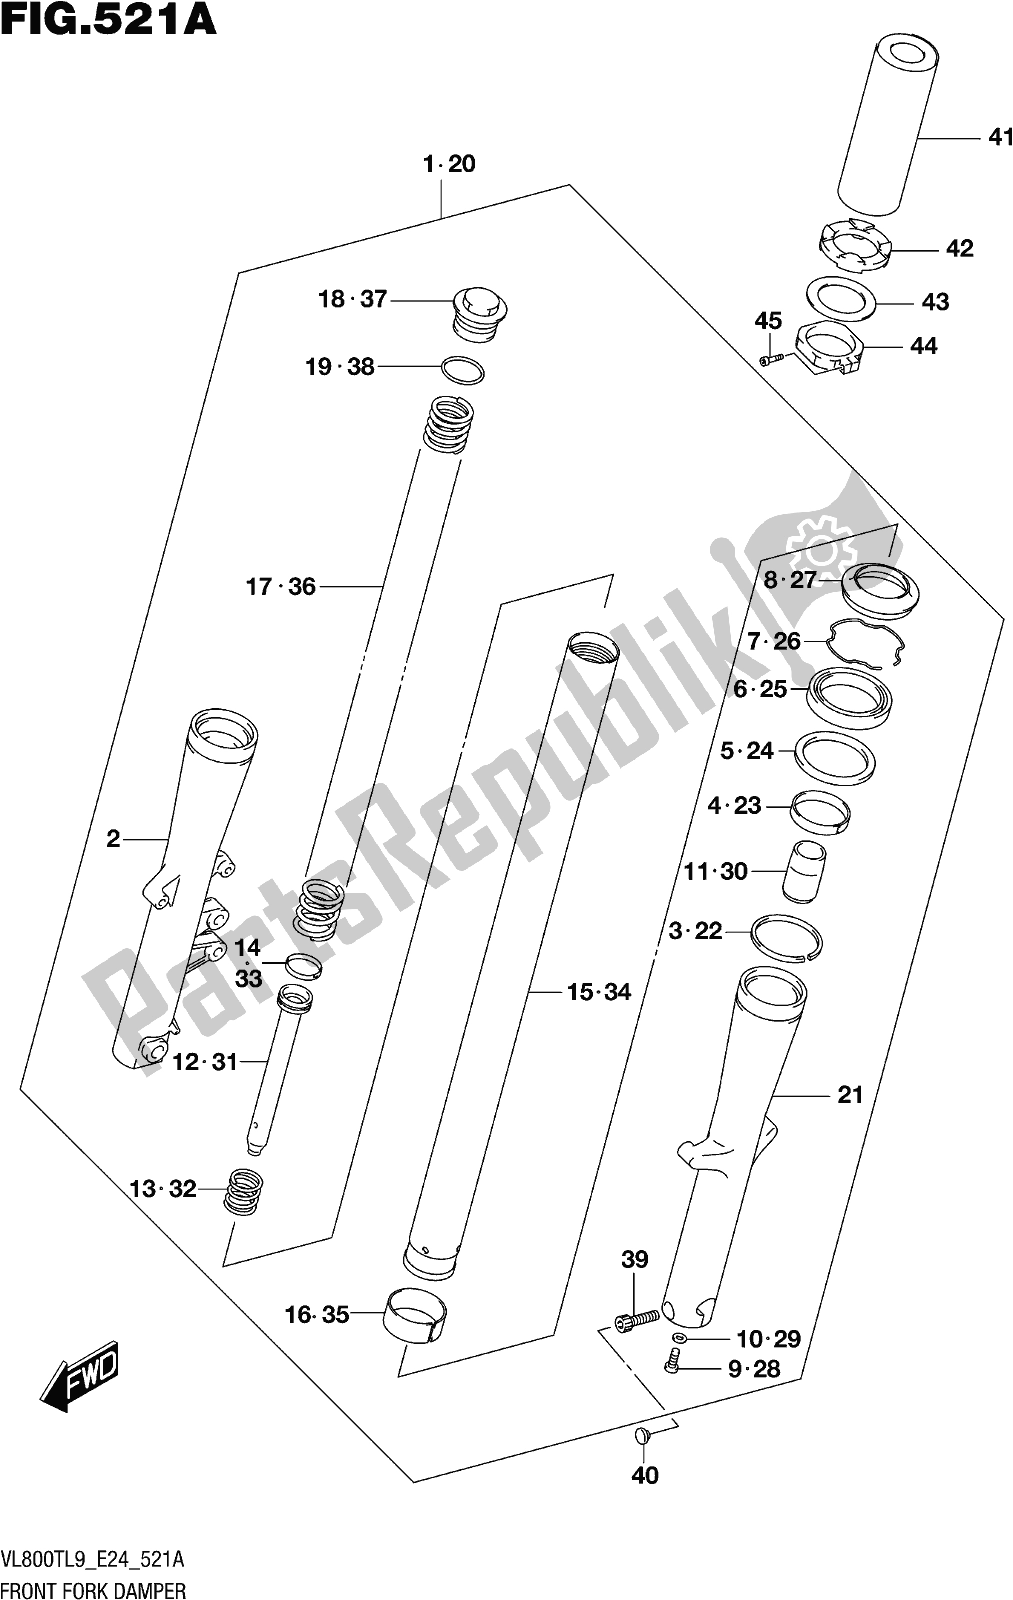 Toutes les pièces pour le Fig. 521a Front Fork Damper du Suzuki VL 800T 2019